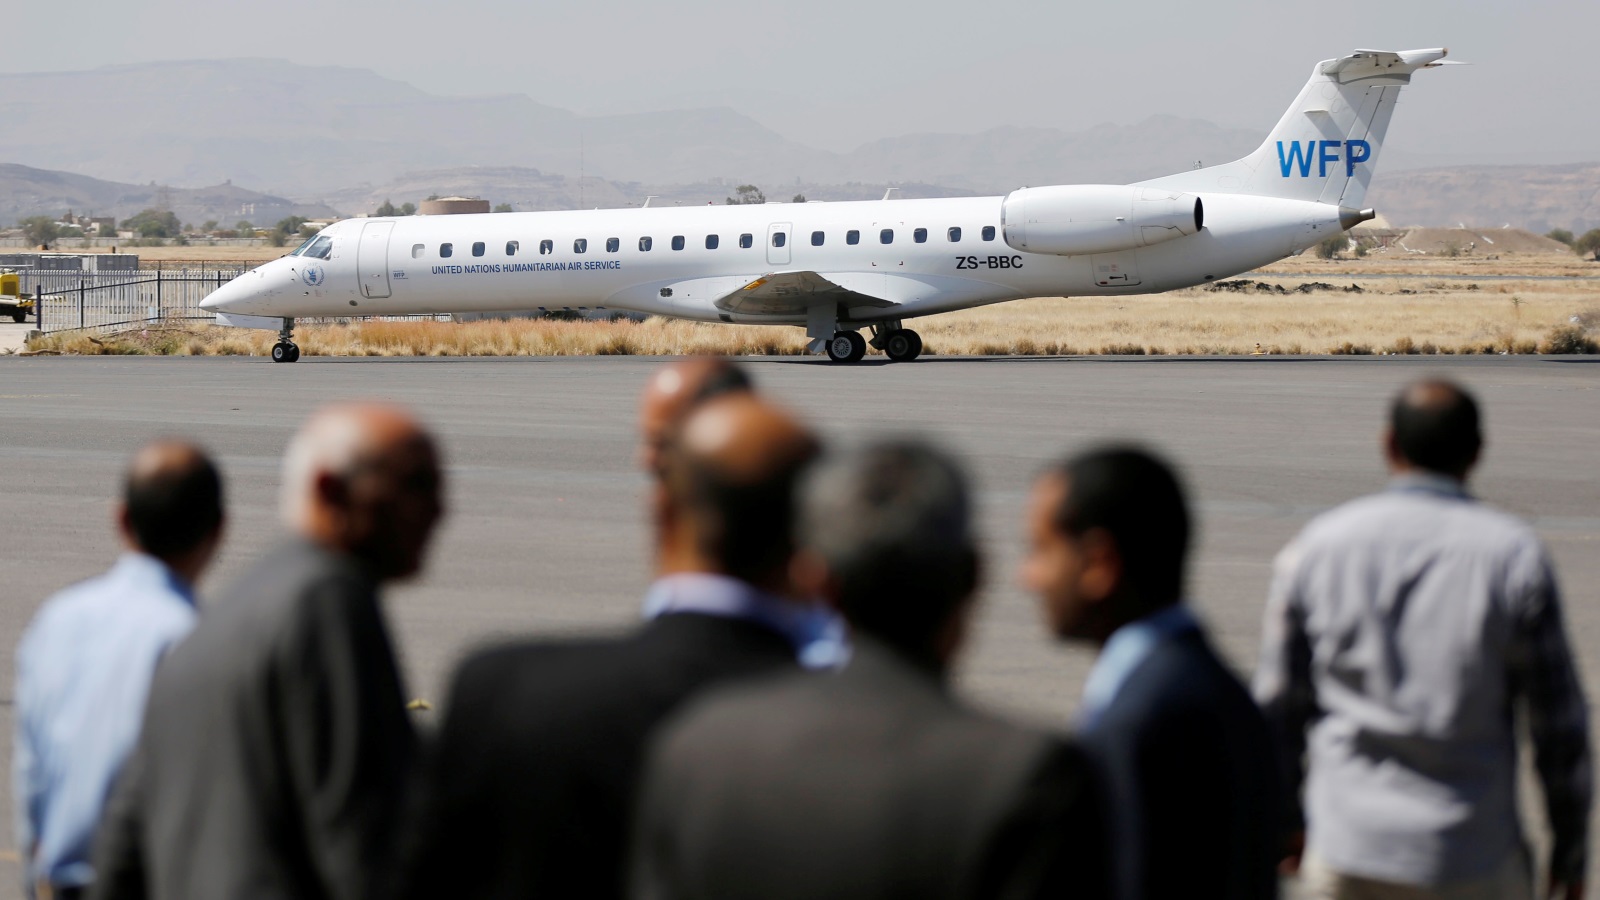 ‪مسؤولون بالسلطة الخاضعة للحوثيين ينتظرون نزول مسؤول أممي من طائرة هبطت بمطار صنعاء‬ مسؤولون بالسلطة الخاضعة للحوثيين ينتظرون نزول مسؤول أممي من طائرة هبطت بمطار صنعاء (رويترز)